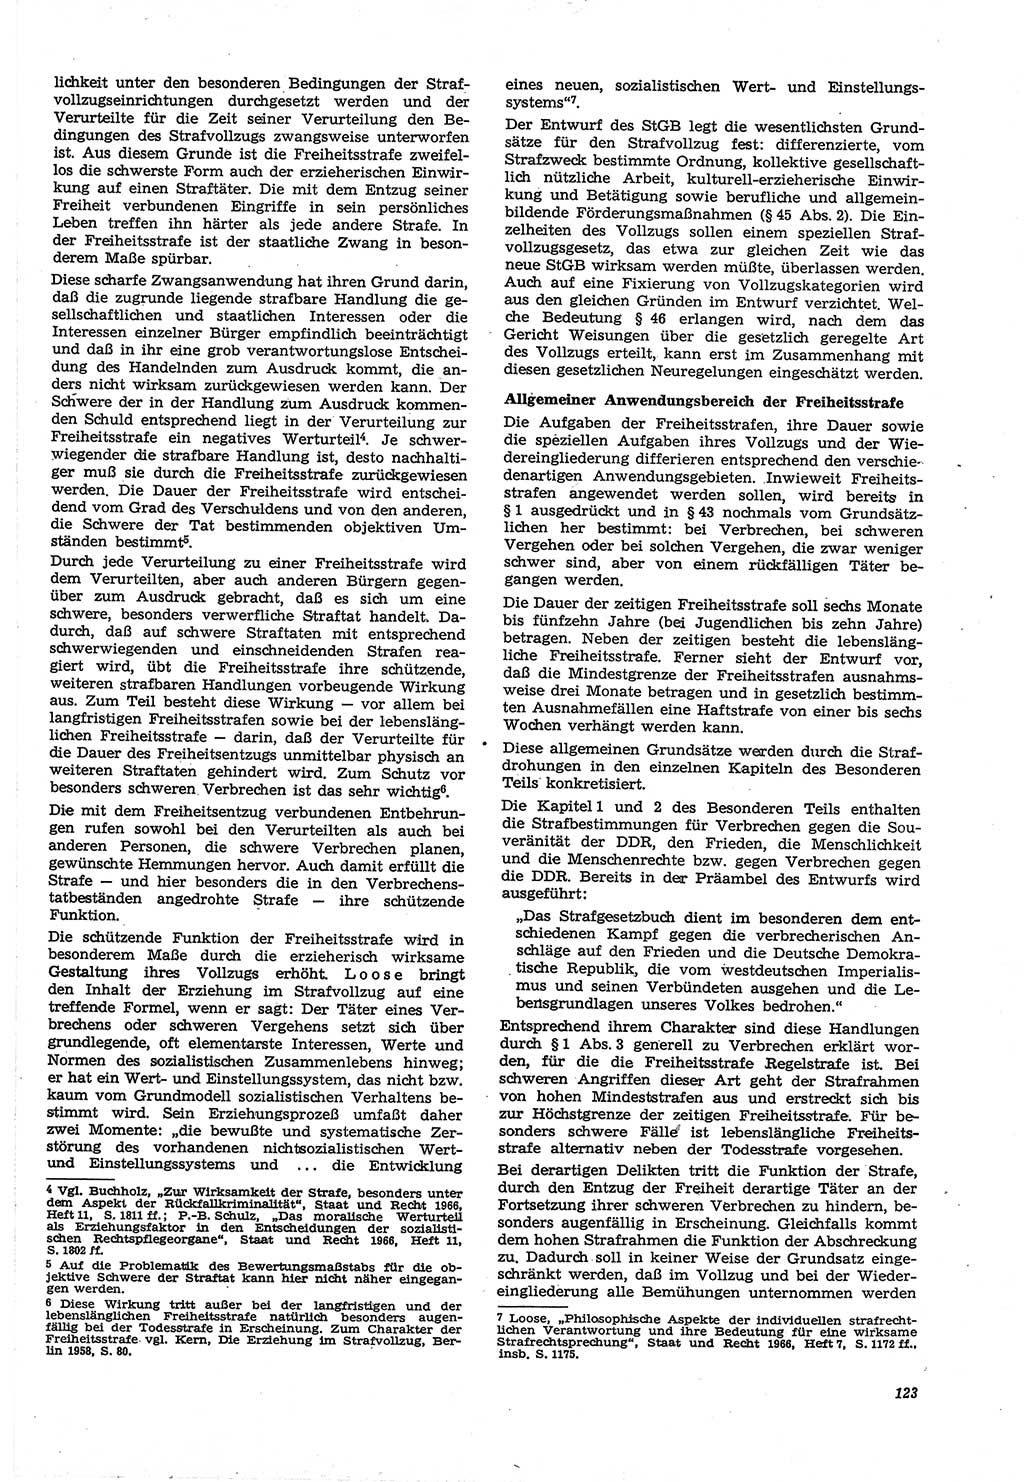 Neue Justiz (NJ), Zeitschrift für Recht und Rechtswissenschaft [Deutsche Demokratische Republik (DDR)], 21. Jahrgang 1967, Seite 123 (NJ DDR 1967, S. 123)